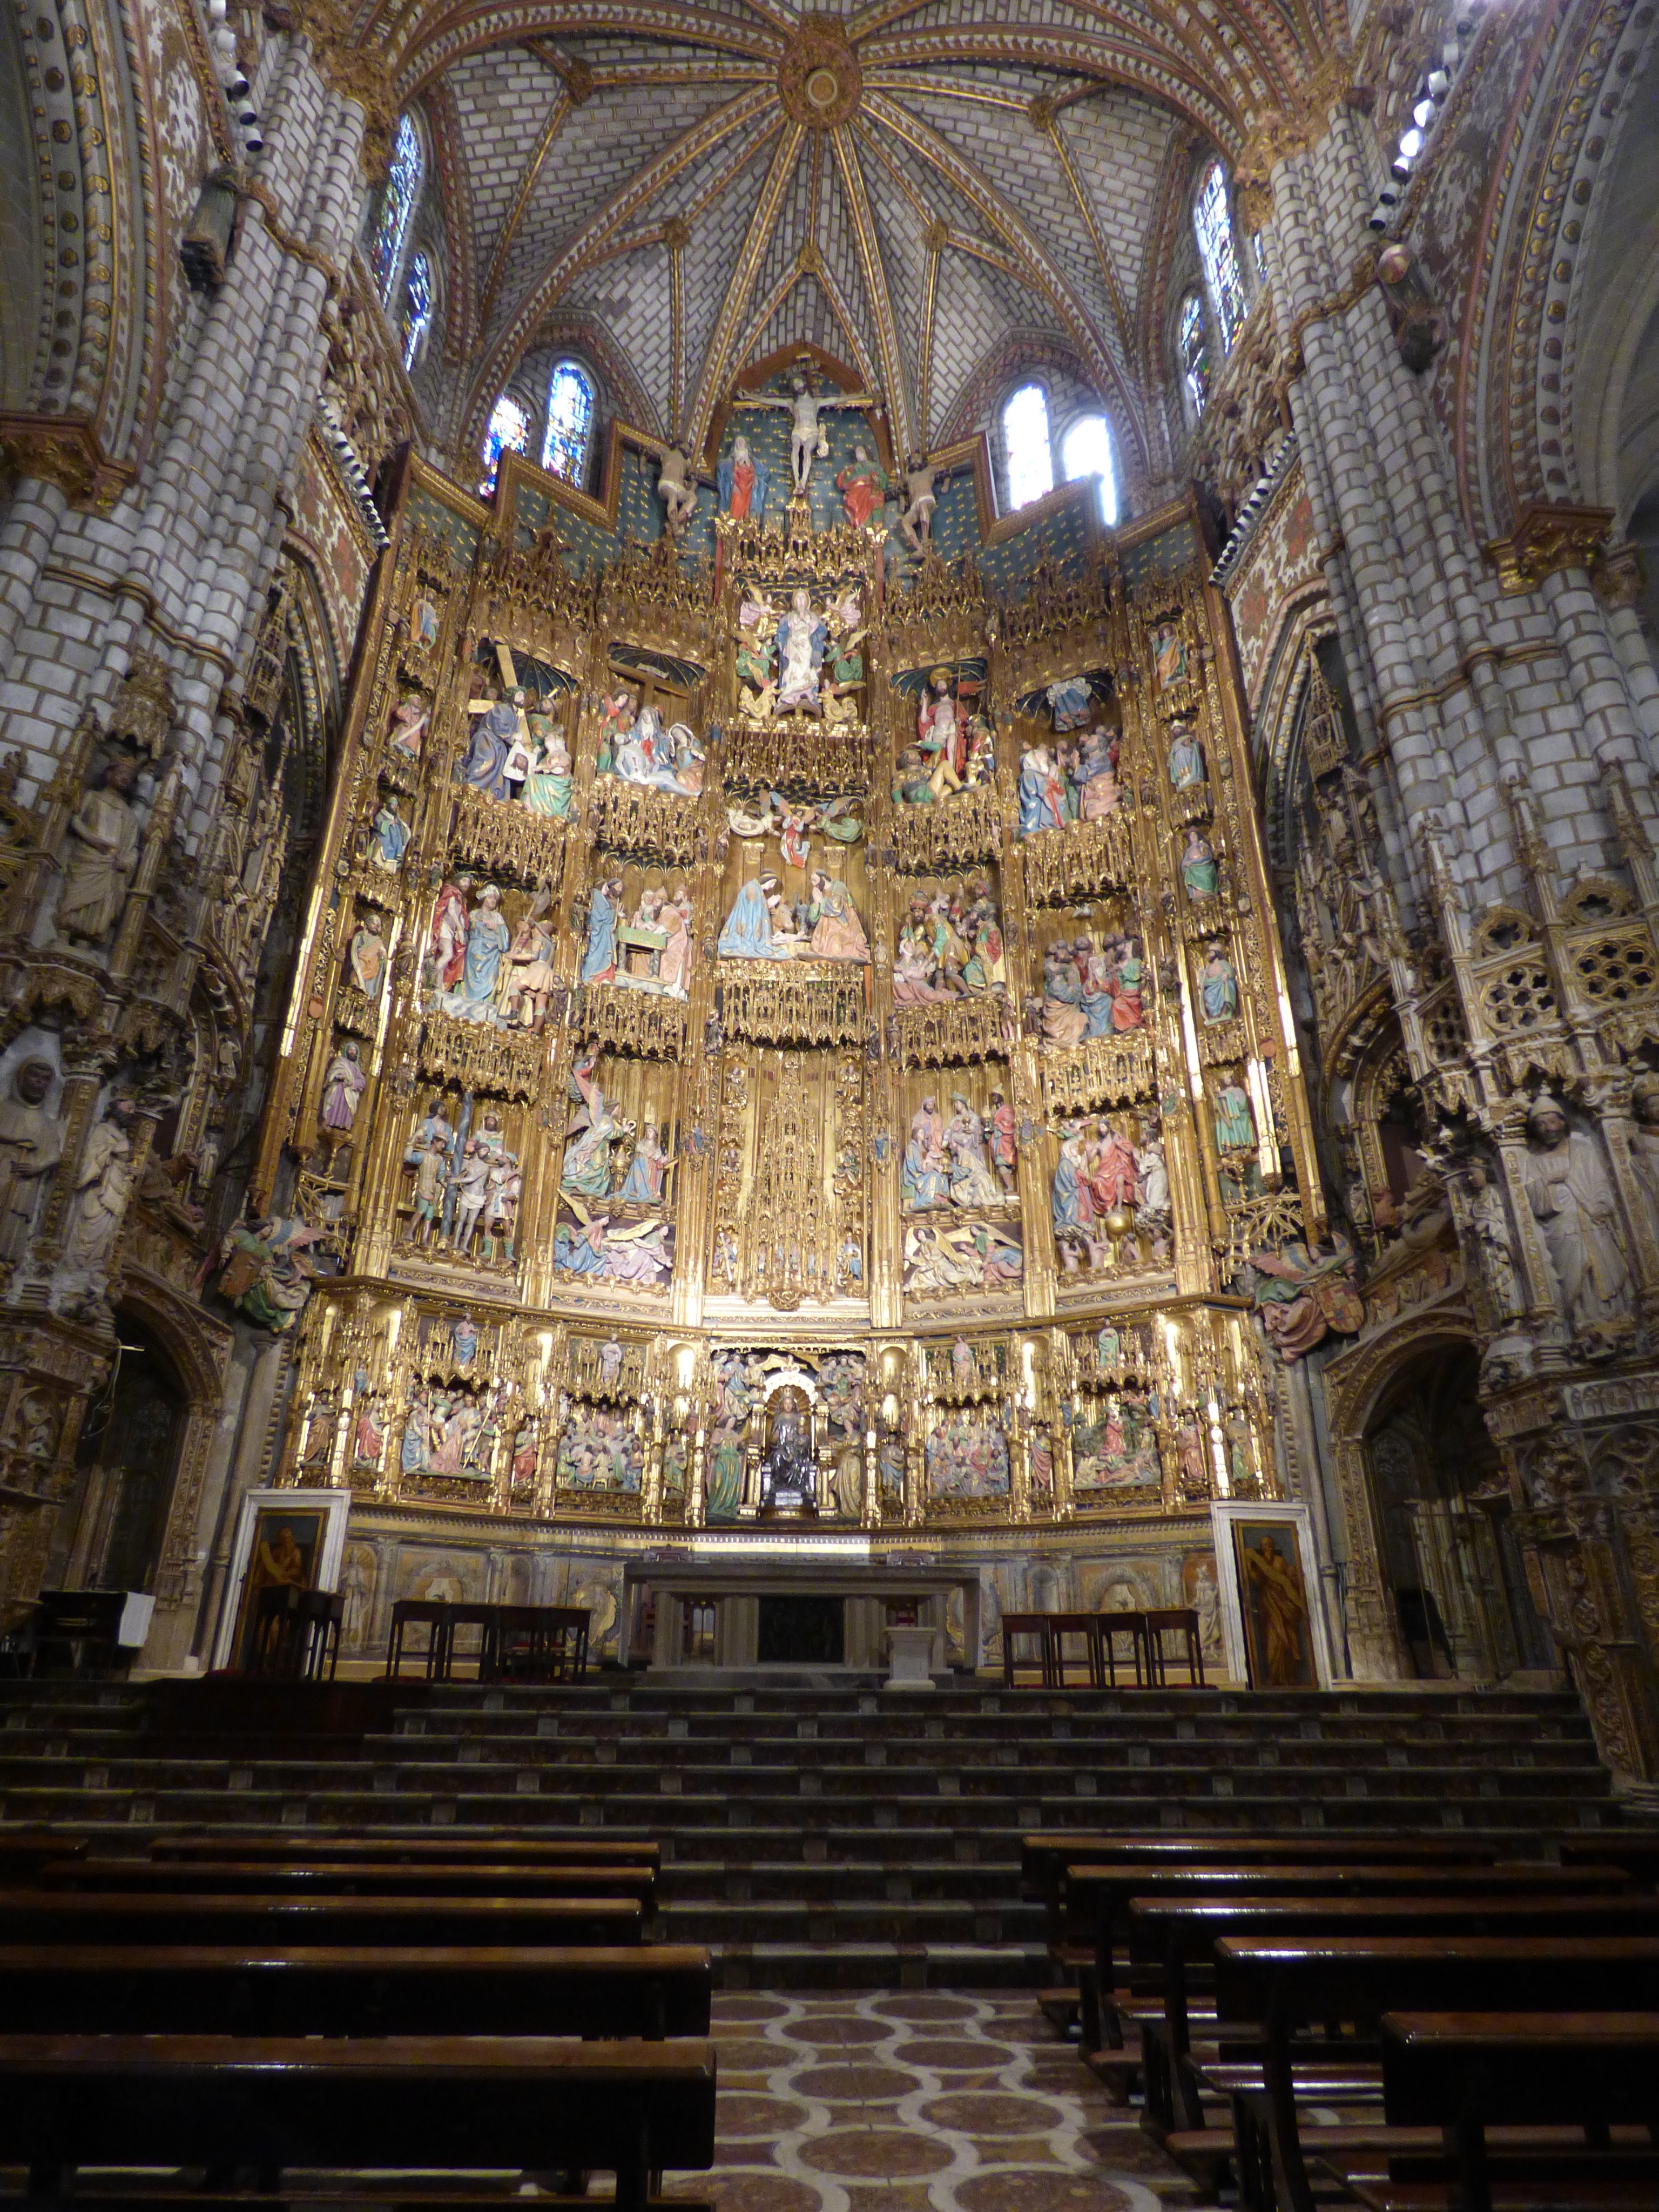 Dm V Twitter 西欧７泊8日 7日目 19年8月10日 これぞ本格的な大聖堂と言った作りと装飾 スペイン トレド トレド大聖堂 T Co Z9izbswo6w Twitter